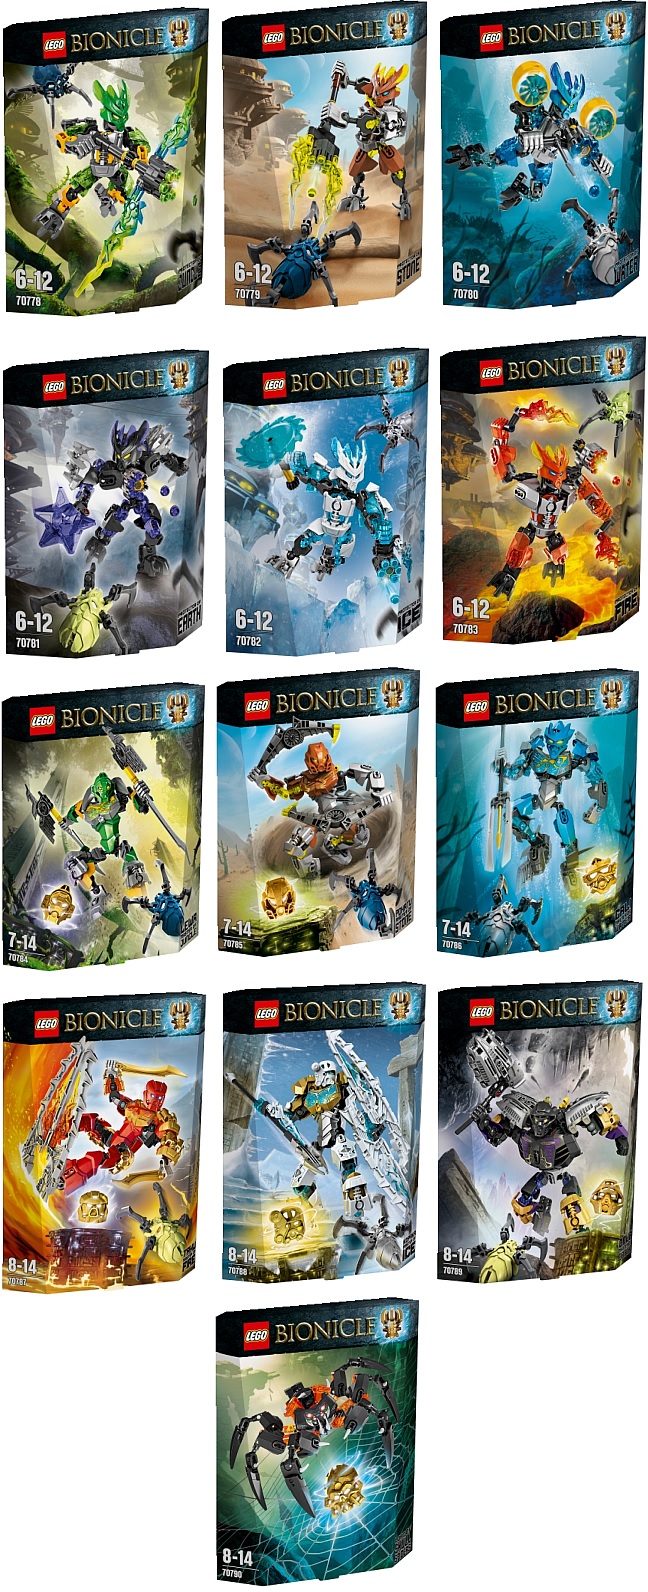 http://nygus-sklep.nazwa.pl/lego2015/BIONICLE/bionicle.jpg